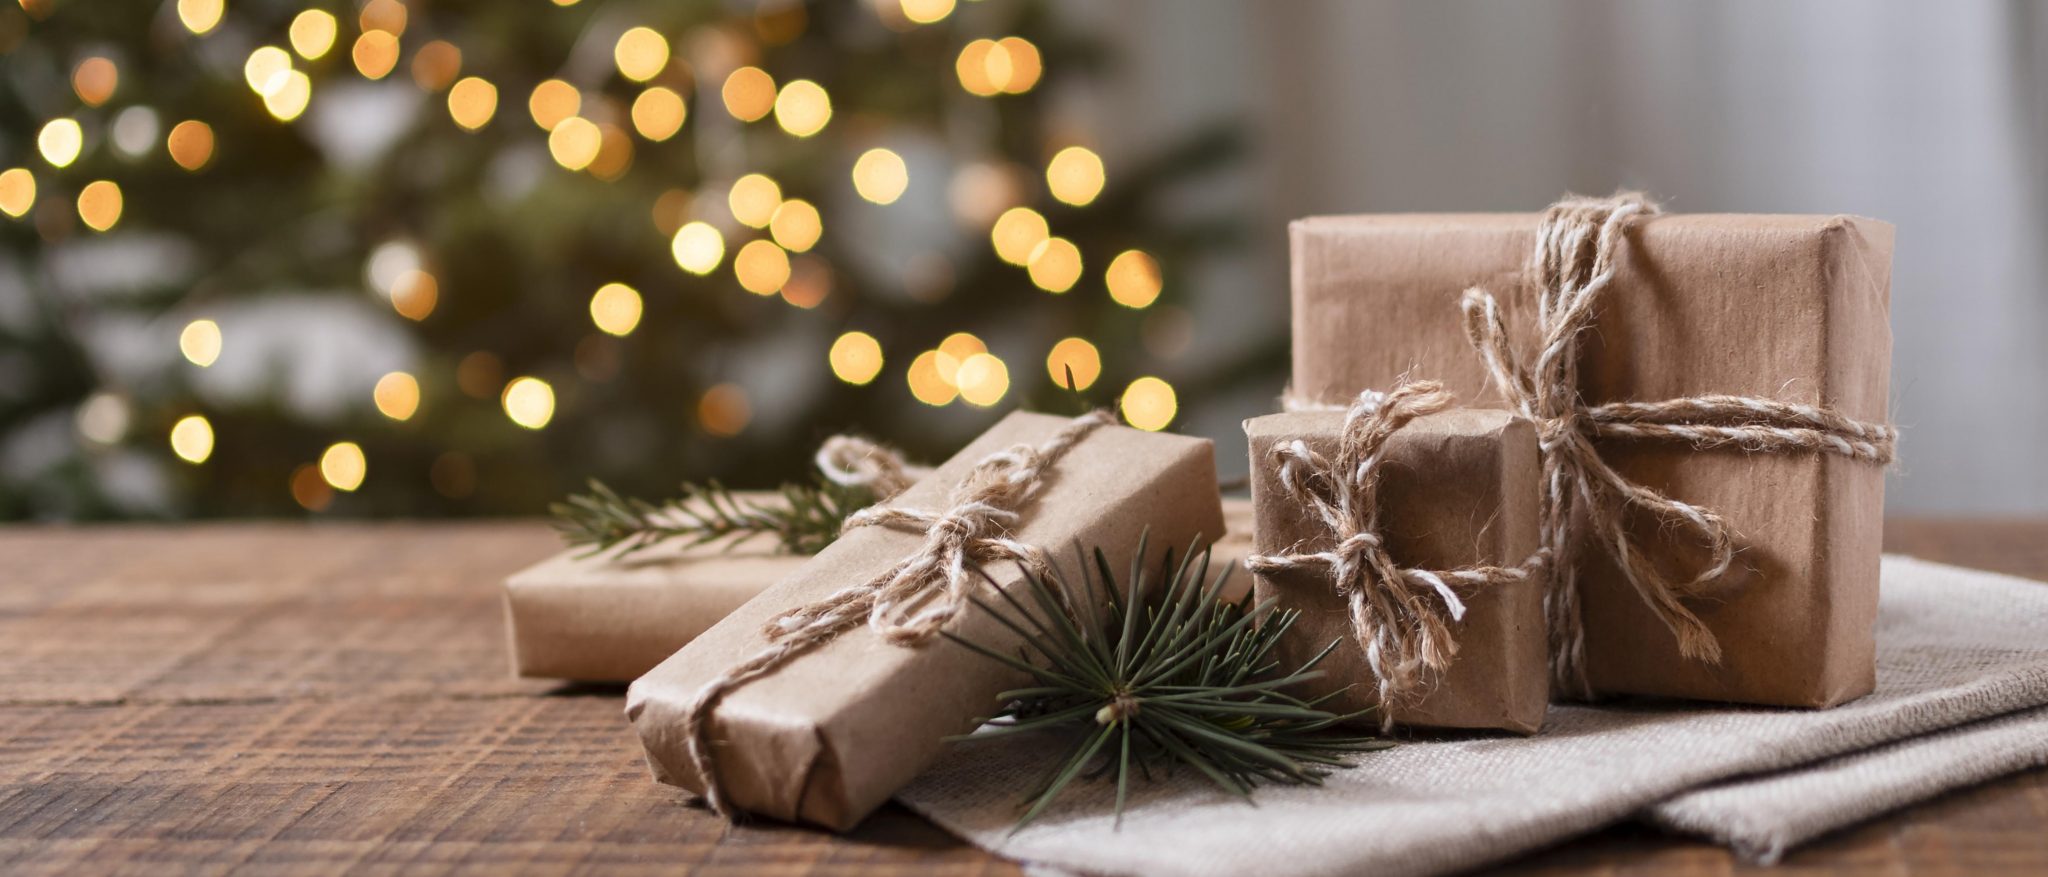 12 idées de cadeaux de Noël pour ravir les amateurs de vins - Le